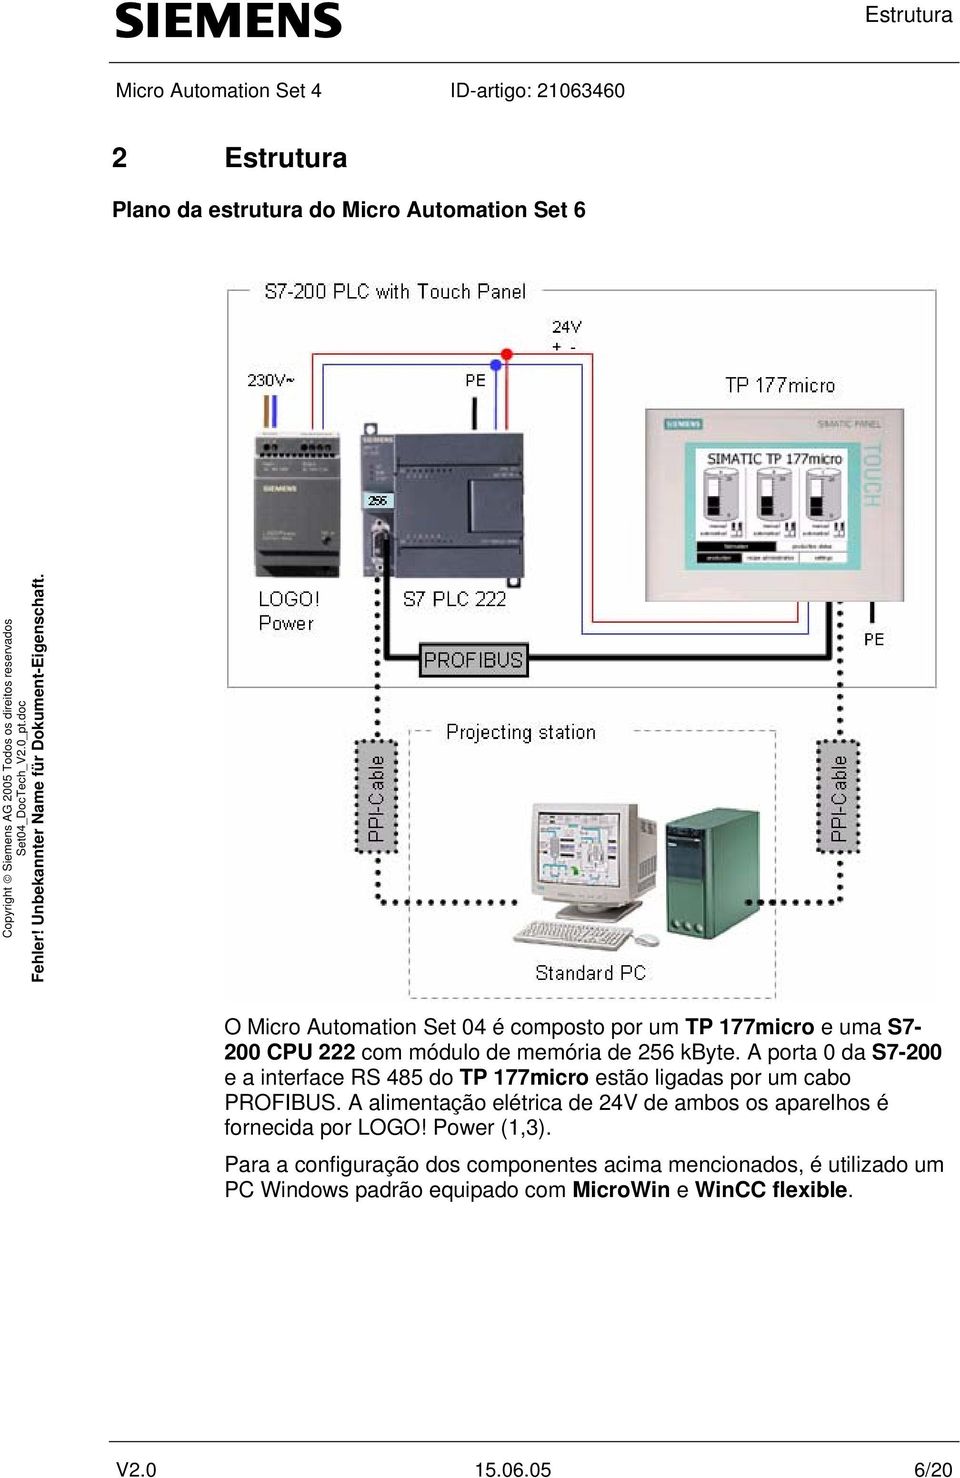 A porta 0 da S7-200 e a interface RS 485 do TP 177micro estão ligadas por um cabo PROFIBUS.